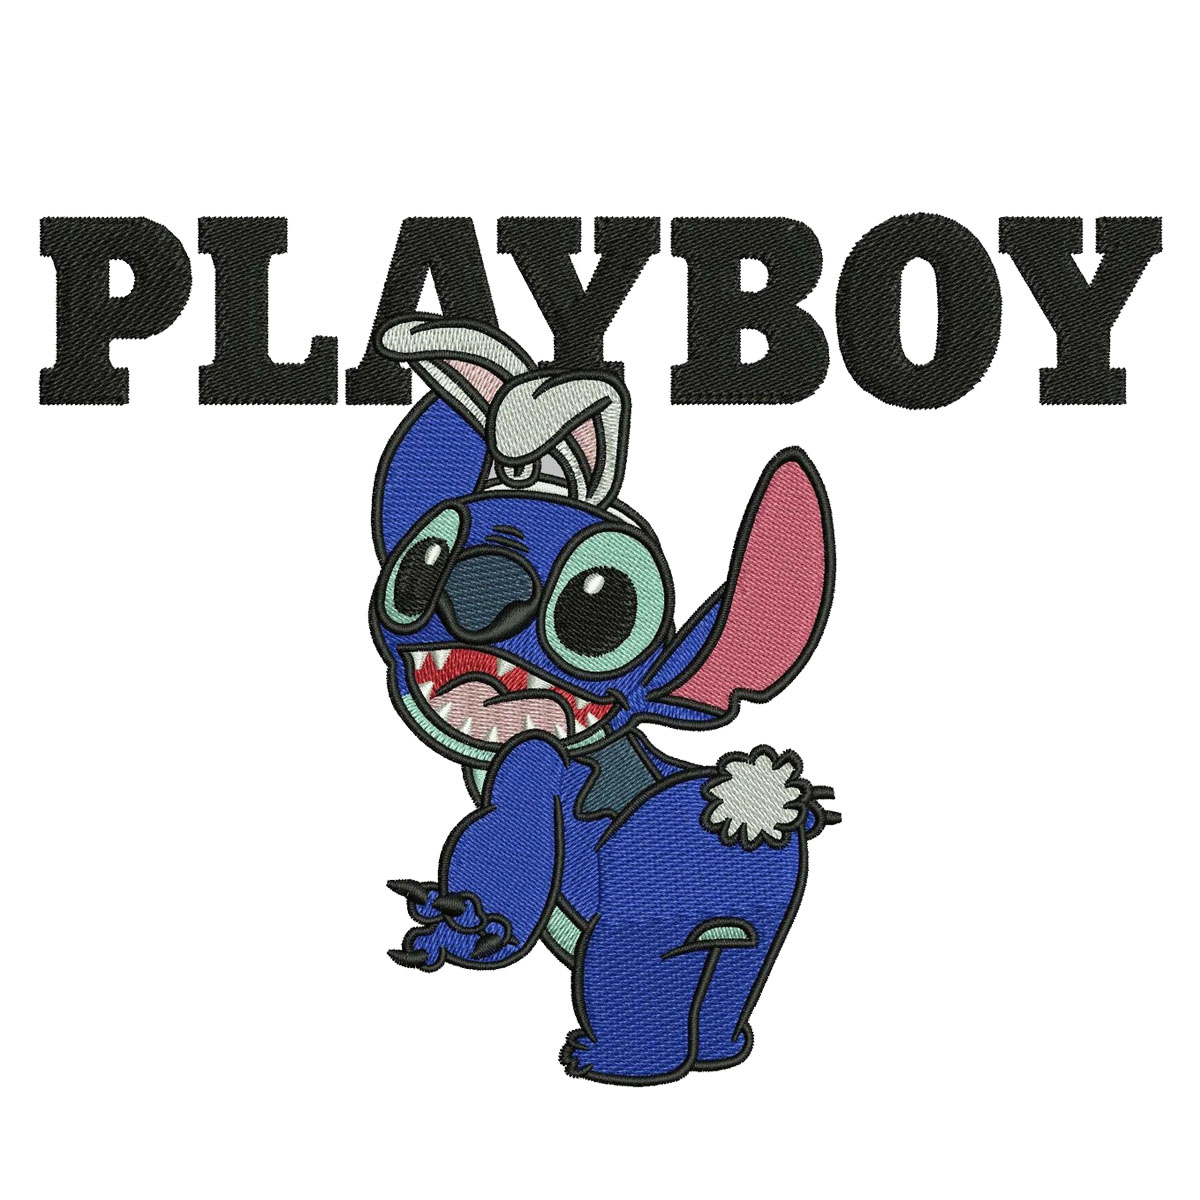 Playboy Japan club - Hoodie - Large - Brand new... - Depop